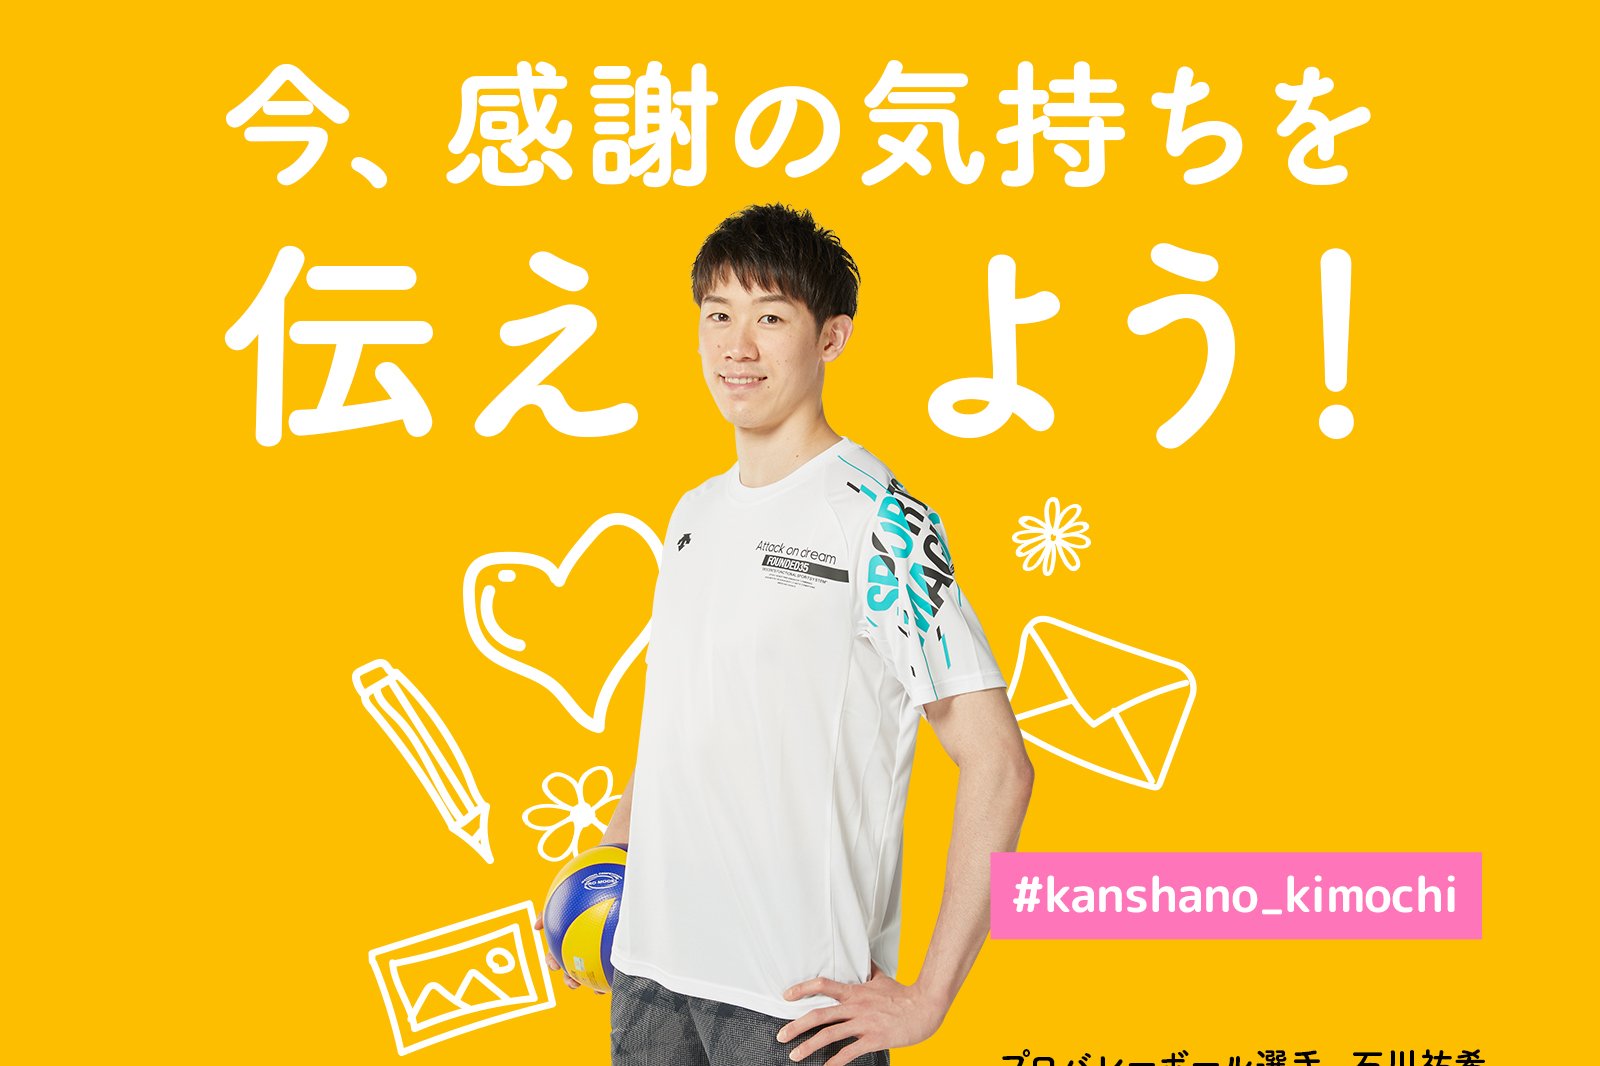 岡崎市出身のプロバレーボールプレーヤー・石川祐希さんが子供たちを応援する企画を実施しています！